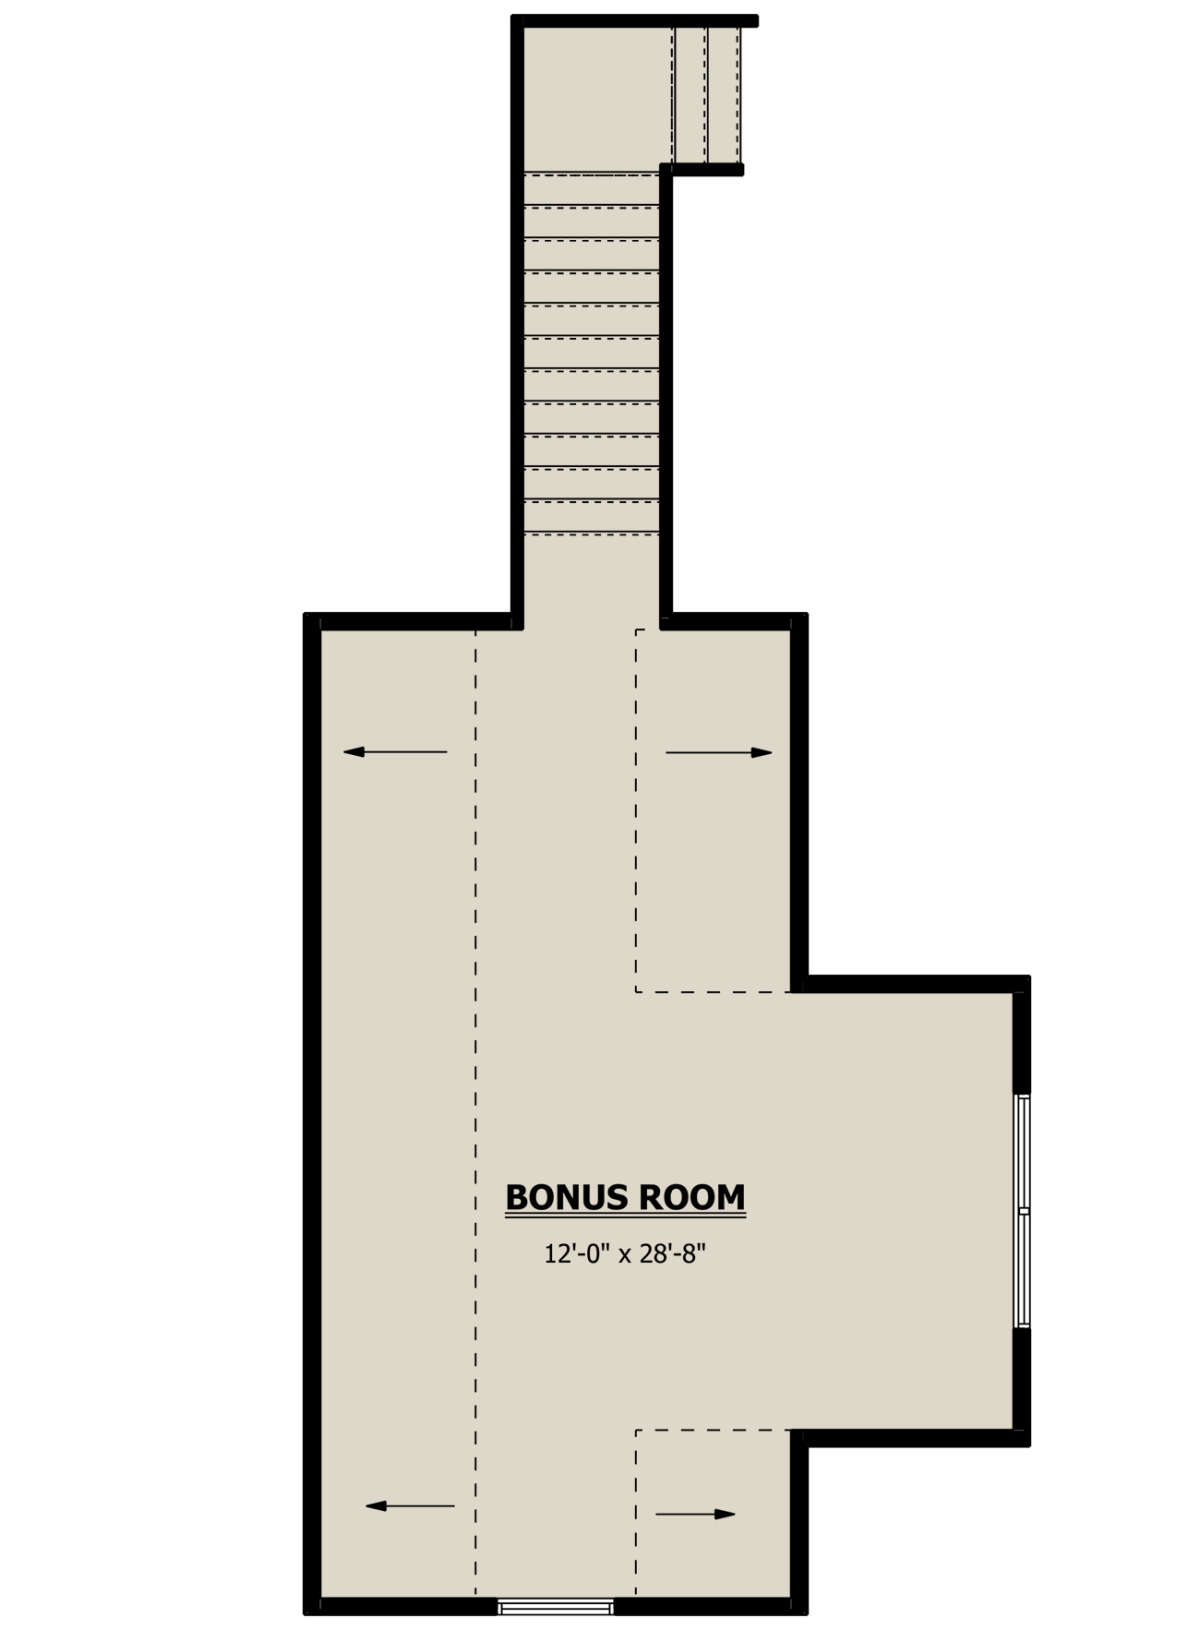 Bonus Room for House Plan #1958-00002